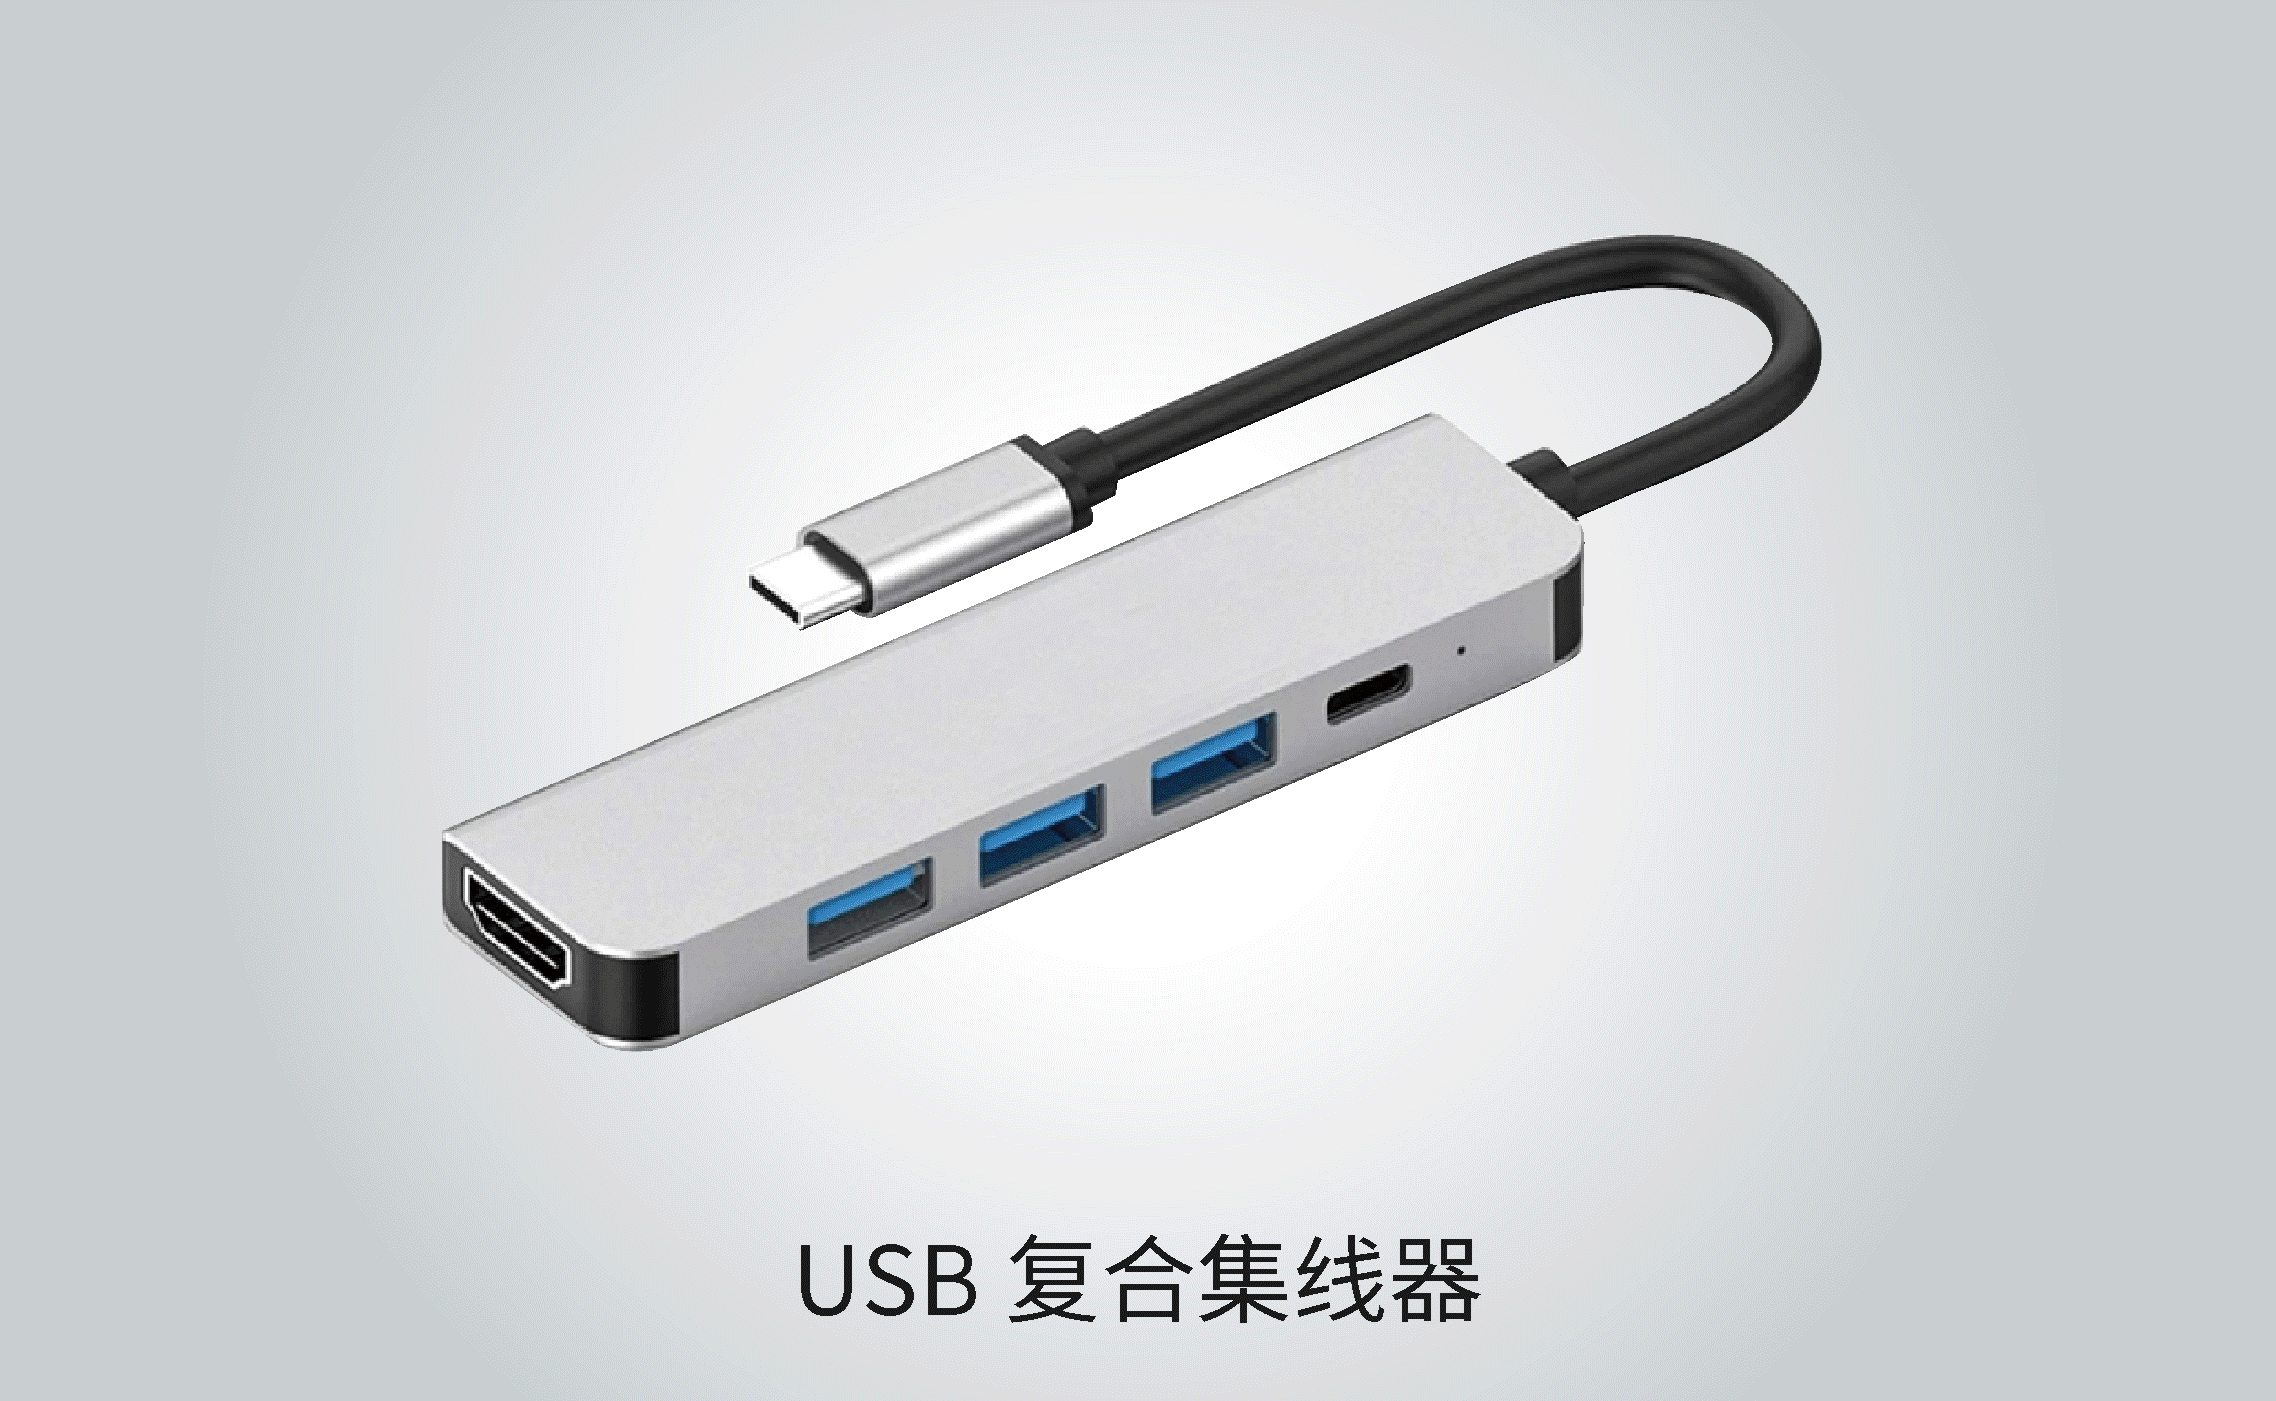 国内首款USB3.0 HUB芯片成功进入商用-充电头网